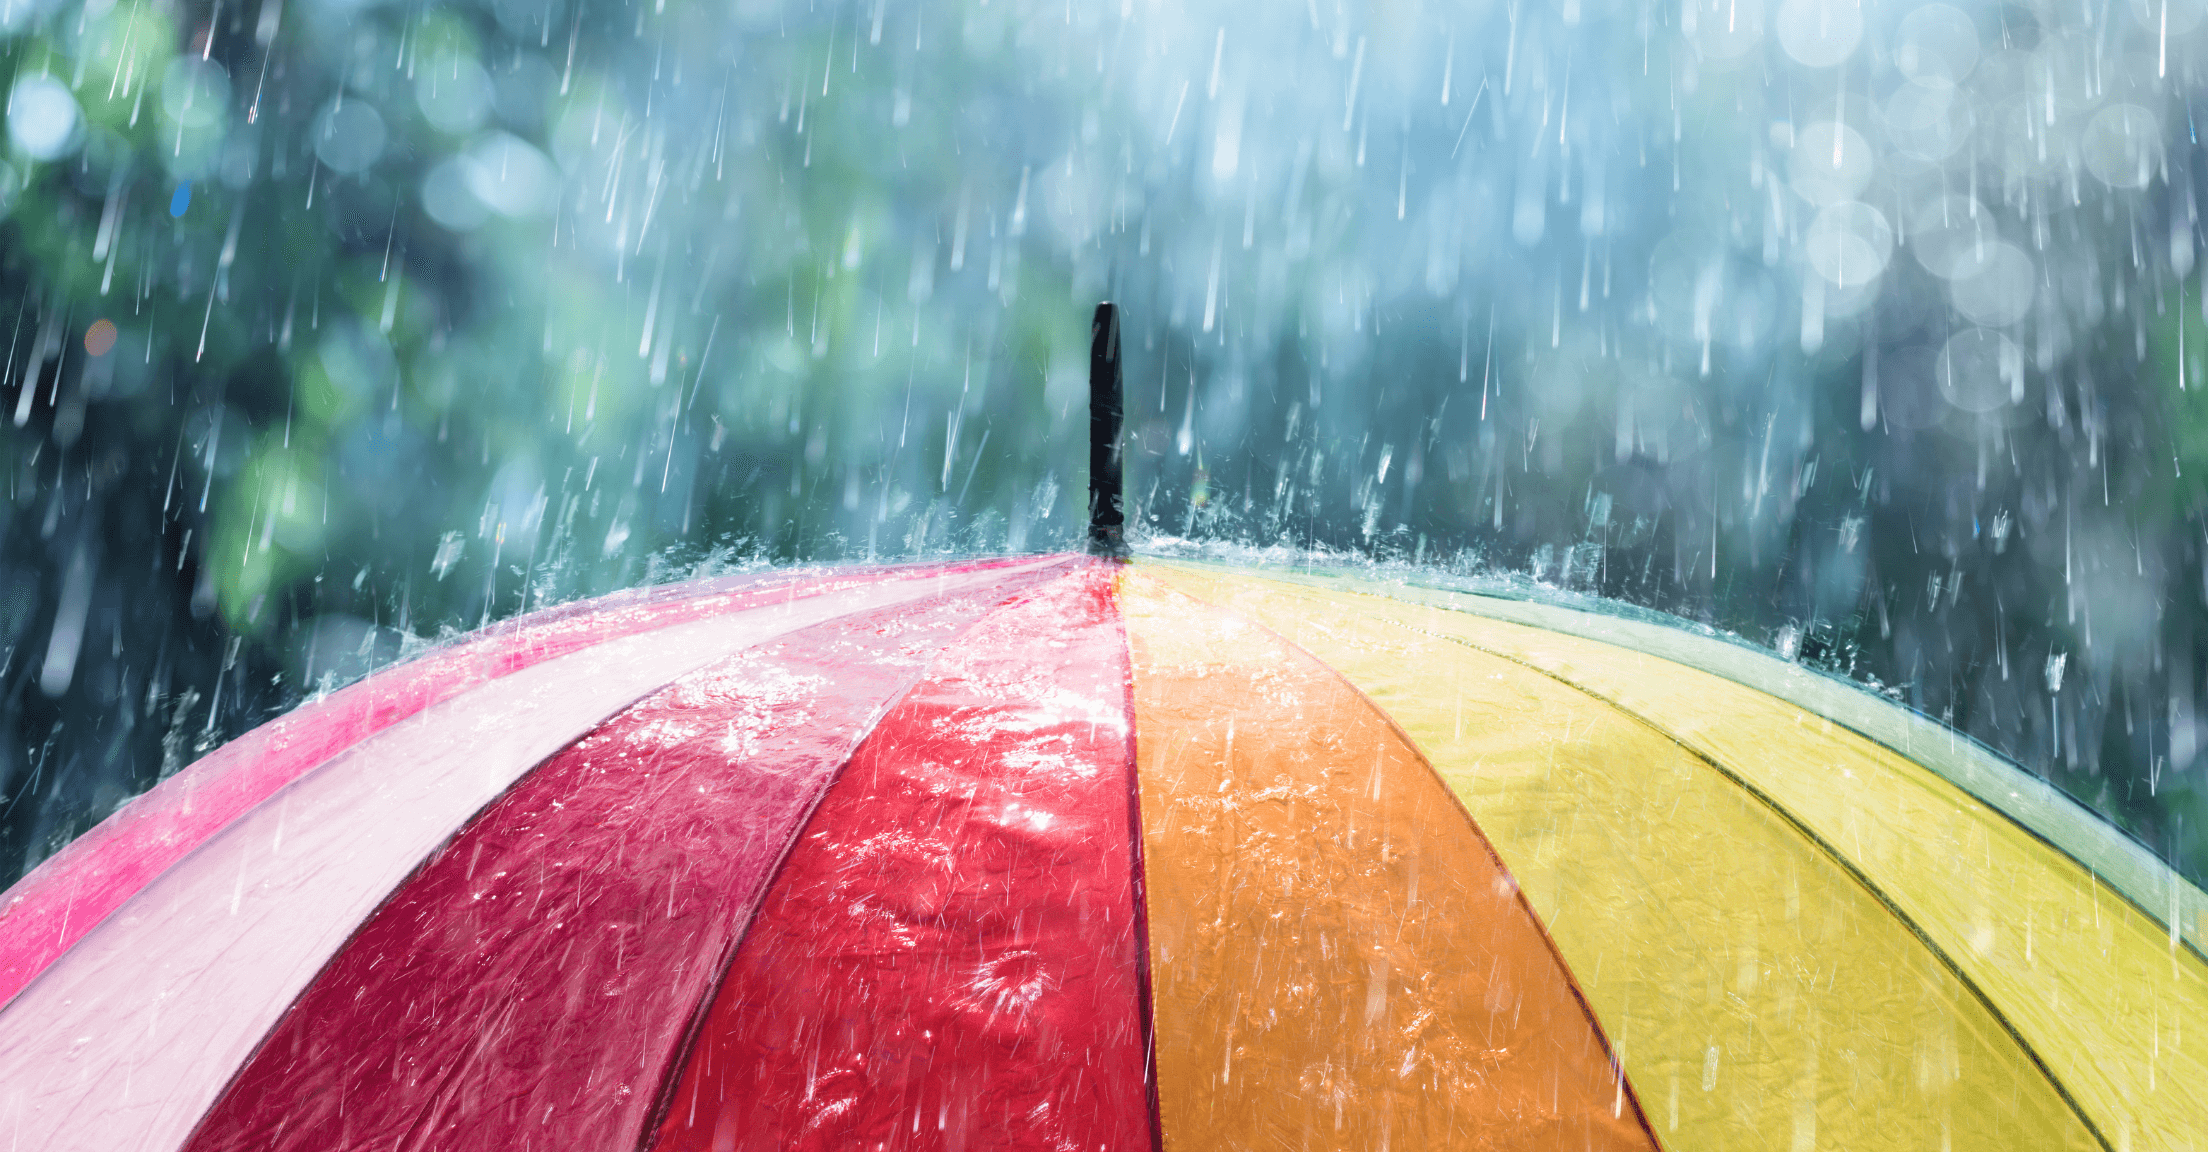 Rainbow umbrella in the rain, representing insurance coverage